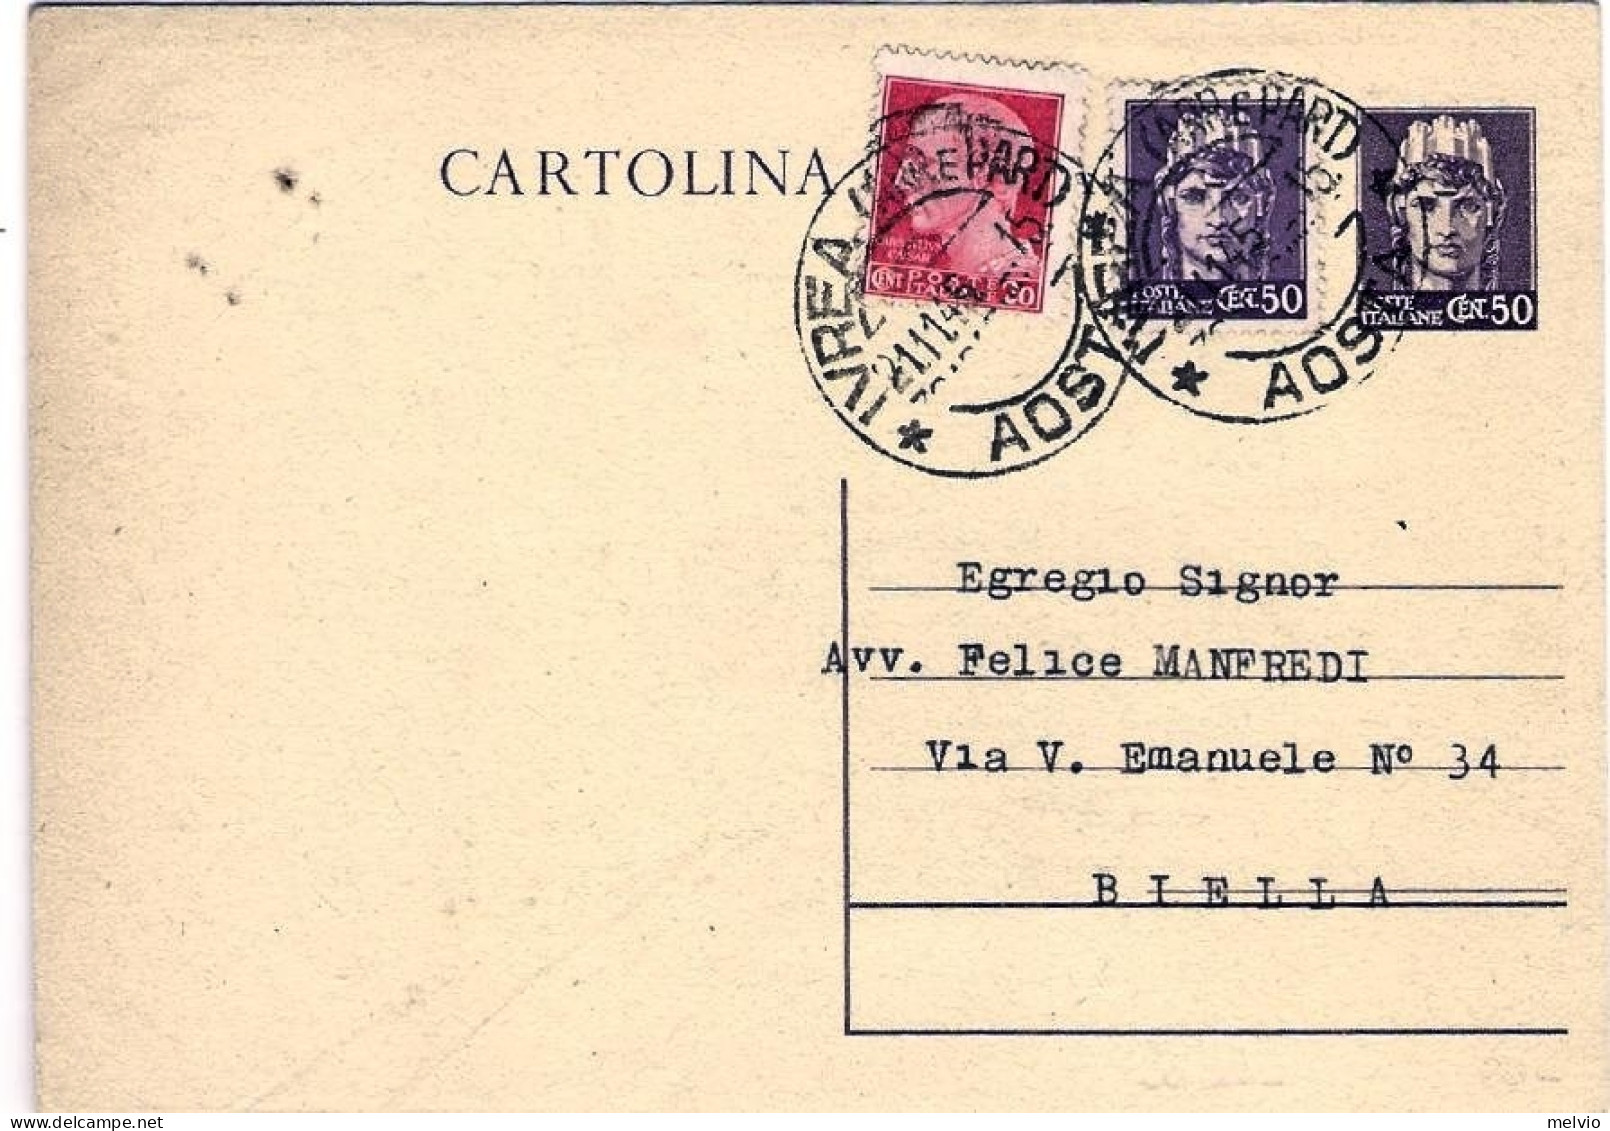 1945-cartolina Postale 50c.Turrita Con Affrancatura Aggiunta 20c.+50c.Imperiale  - Poststempel